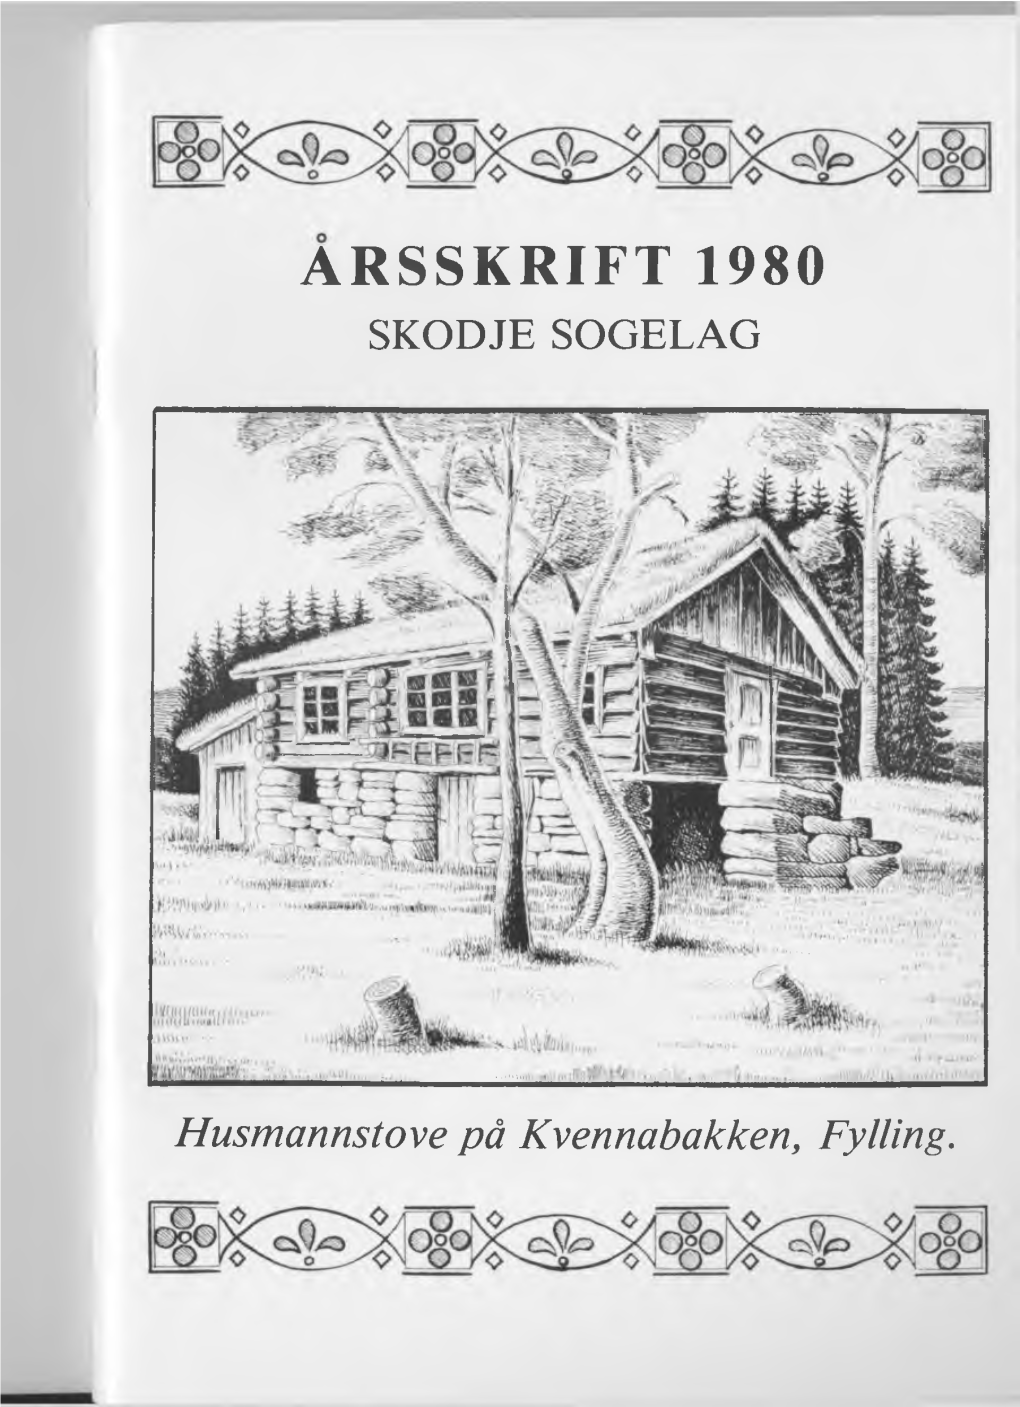 Årsskrift 1980 Skodje Sogelag